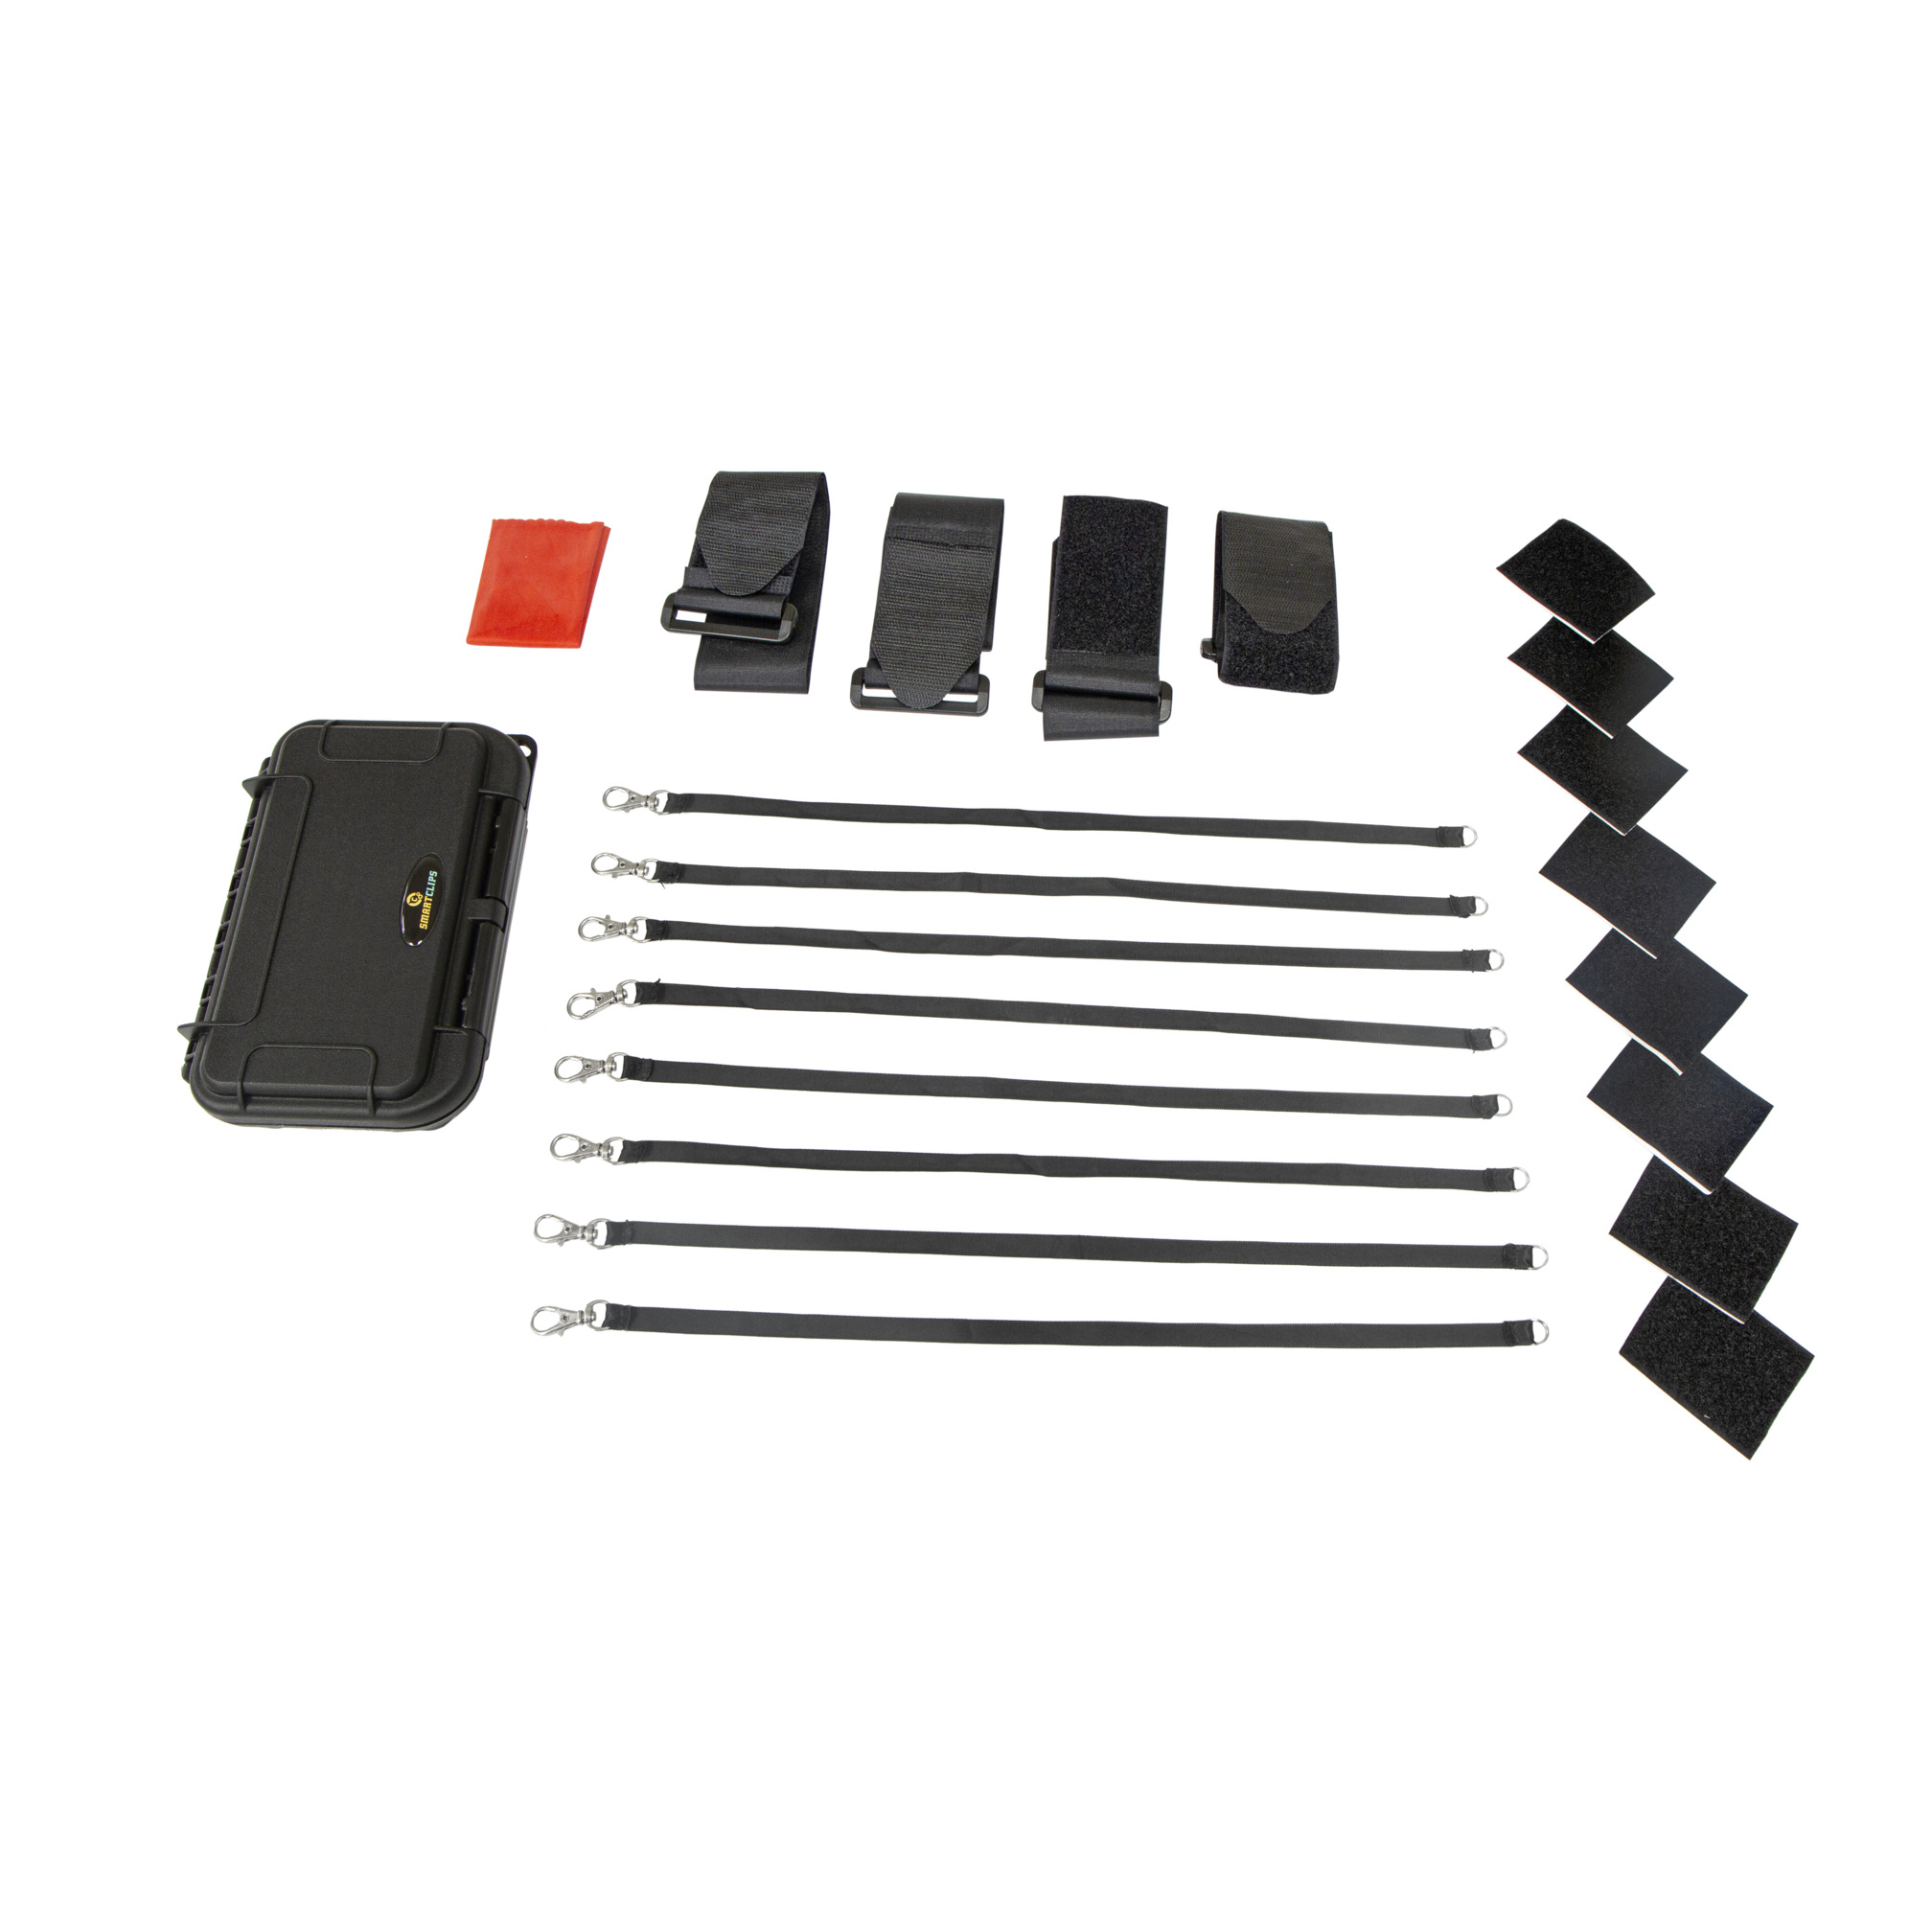 SmartClips™ basic kit